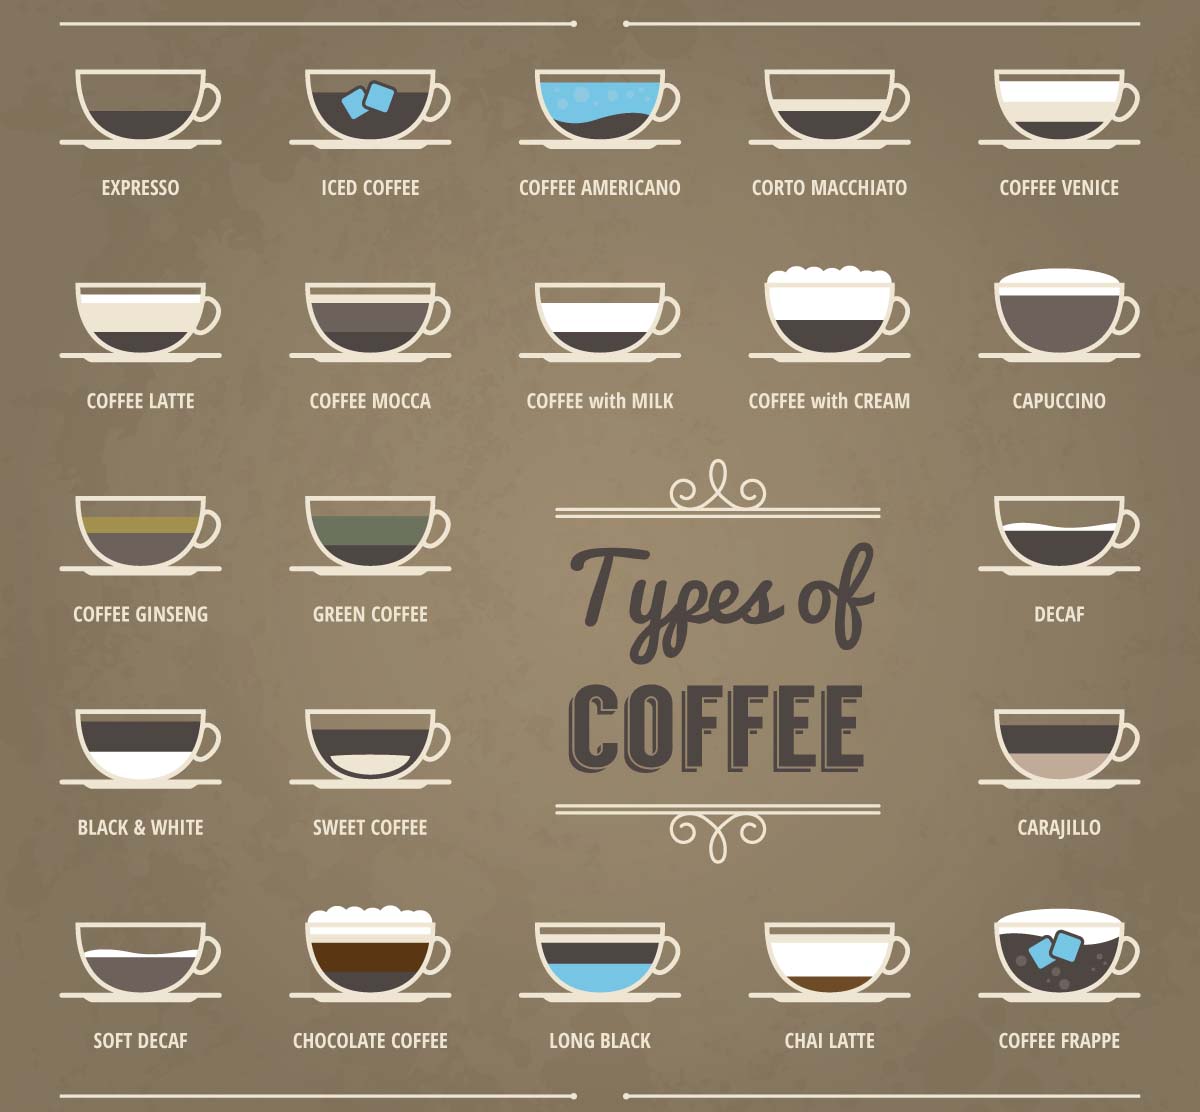 coffee descriptions